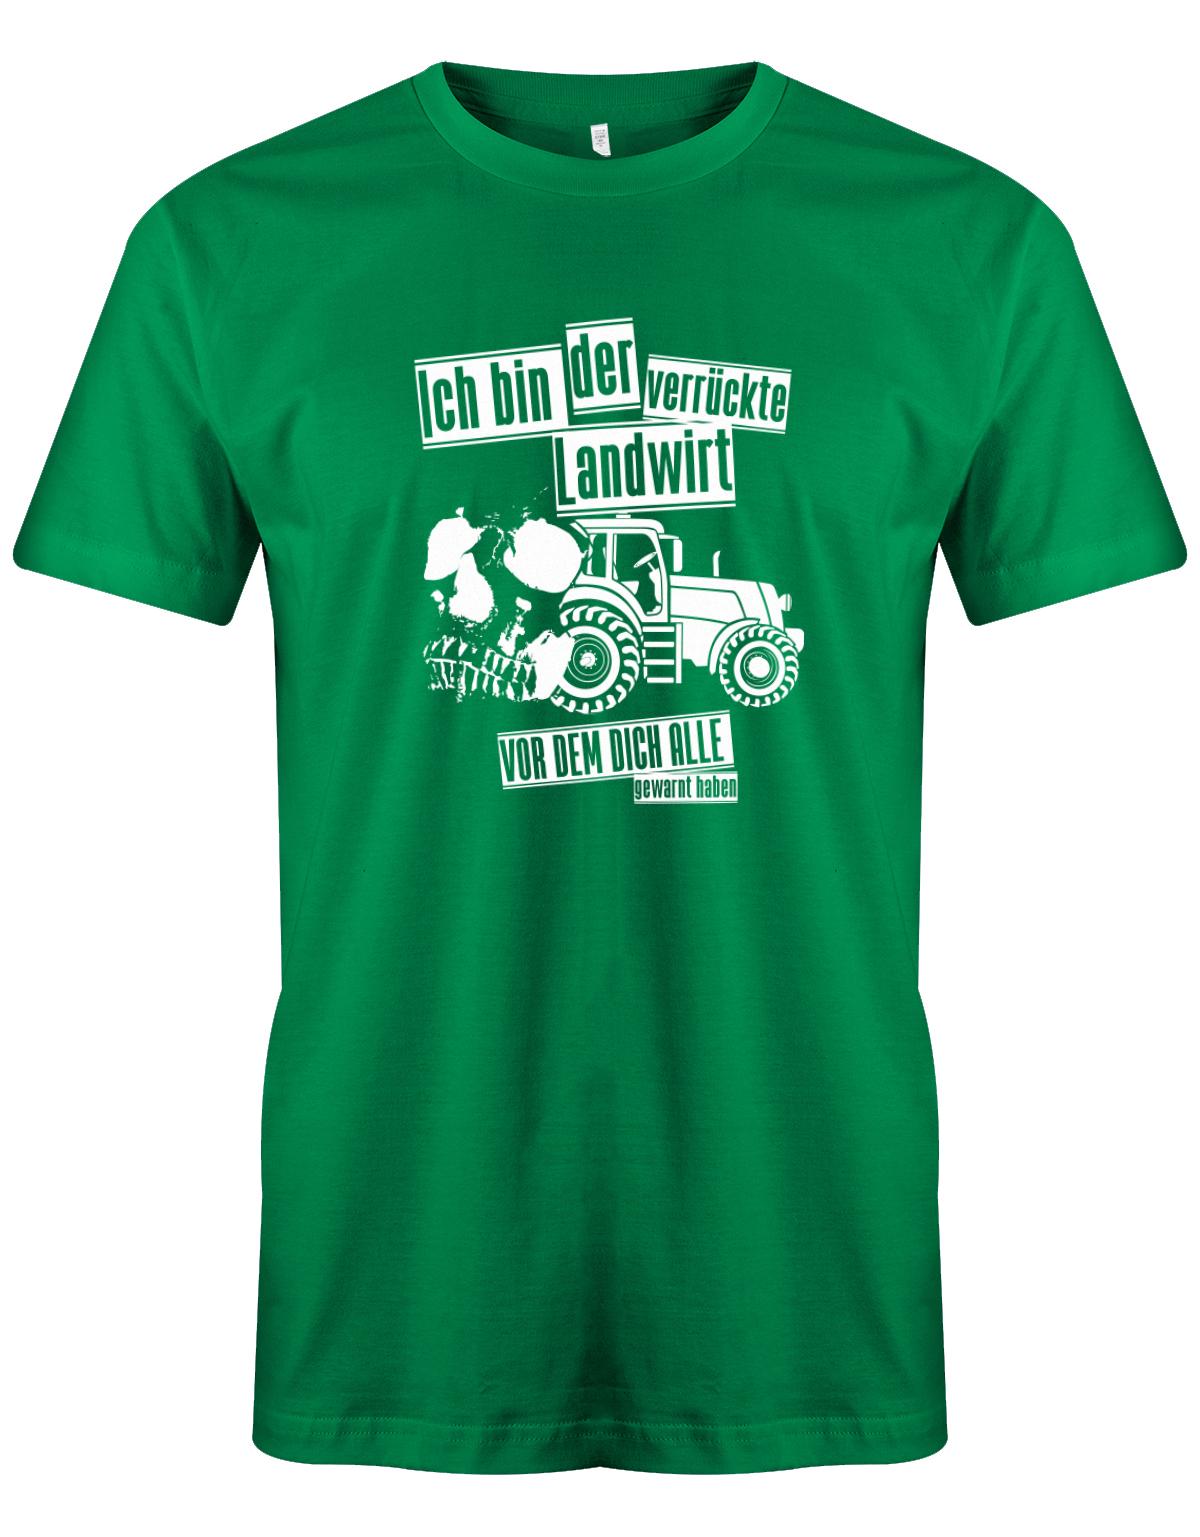 Landwirtschaft Shirt Männer - Ich bin der verrückte Landwirt vor dem dich alle gewarnt haben. Grün